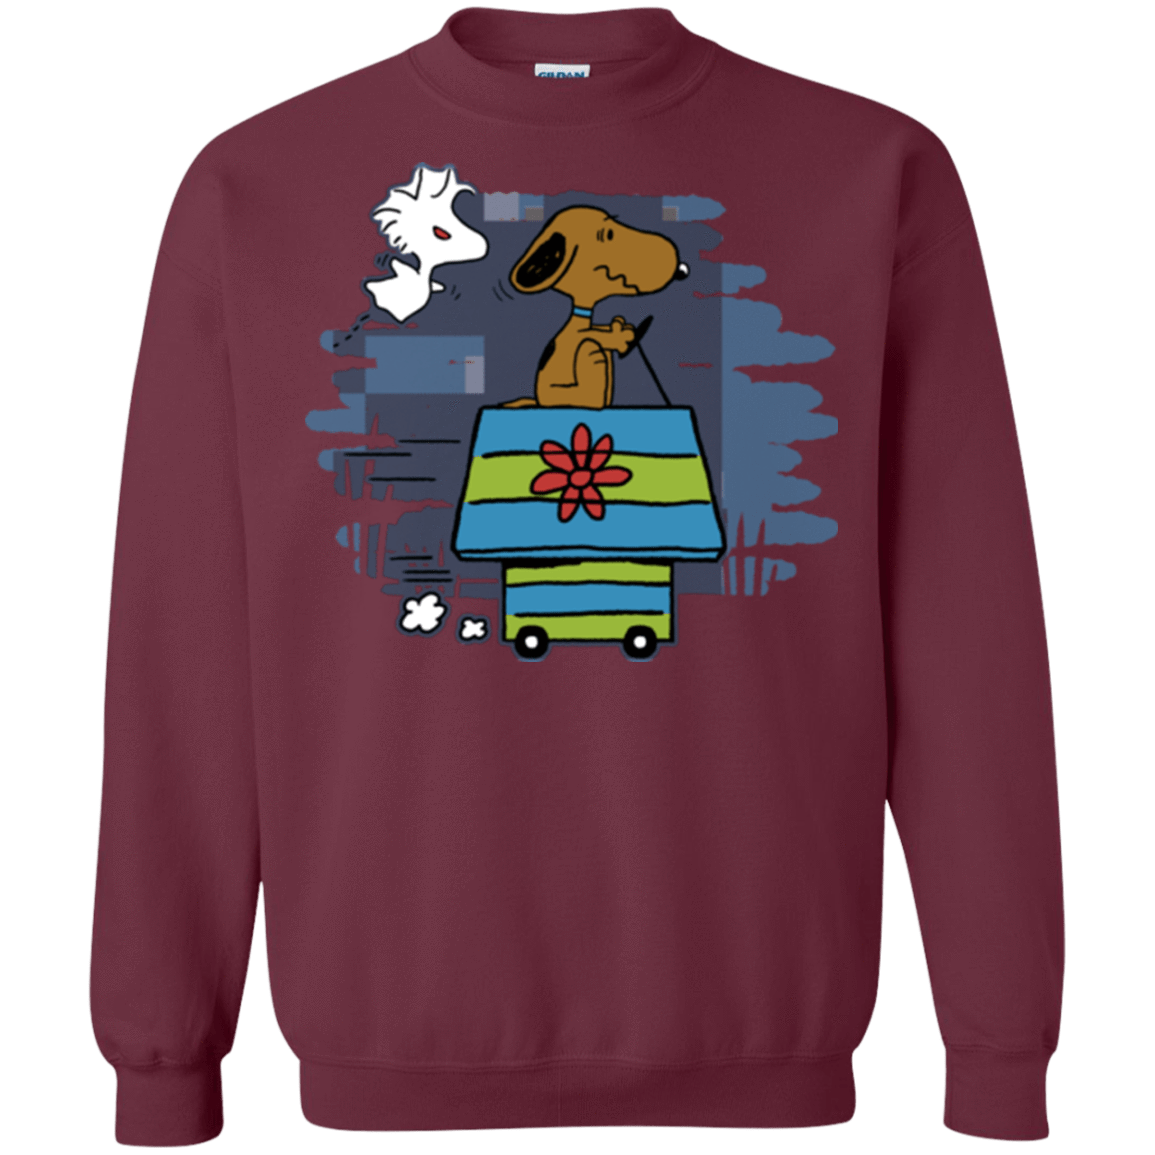 Sweatshirts Maroon / Small Snoopydoo Crewneck Sweatshirt